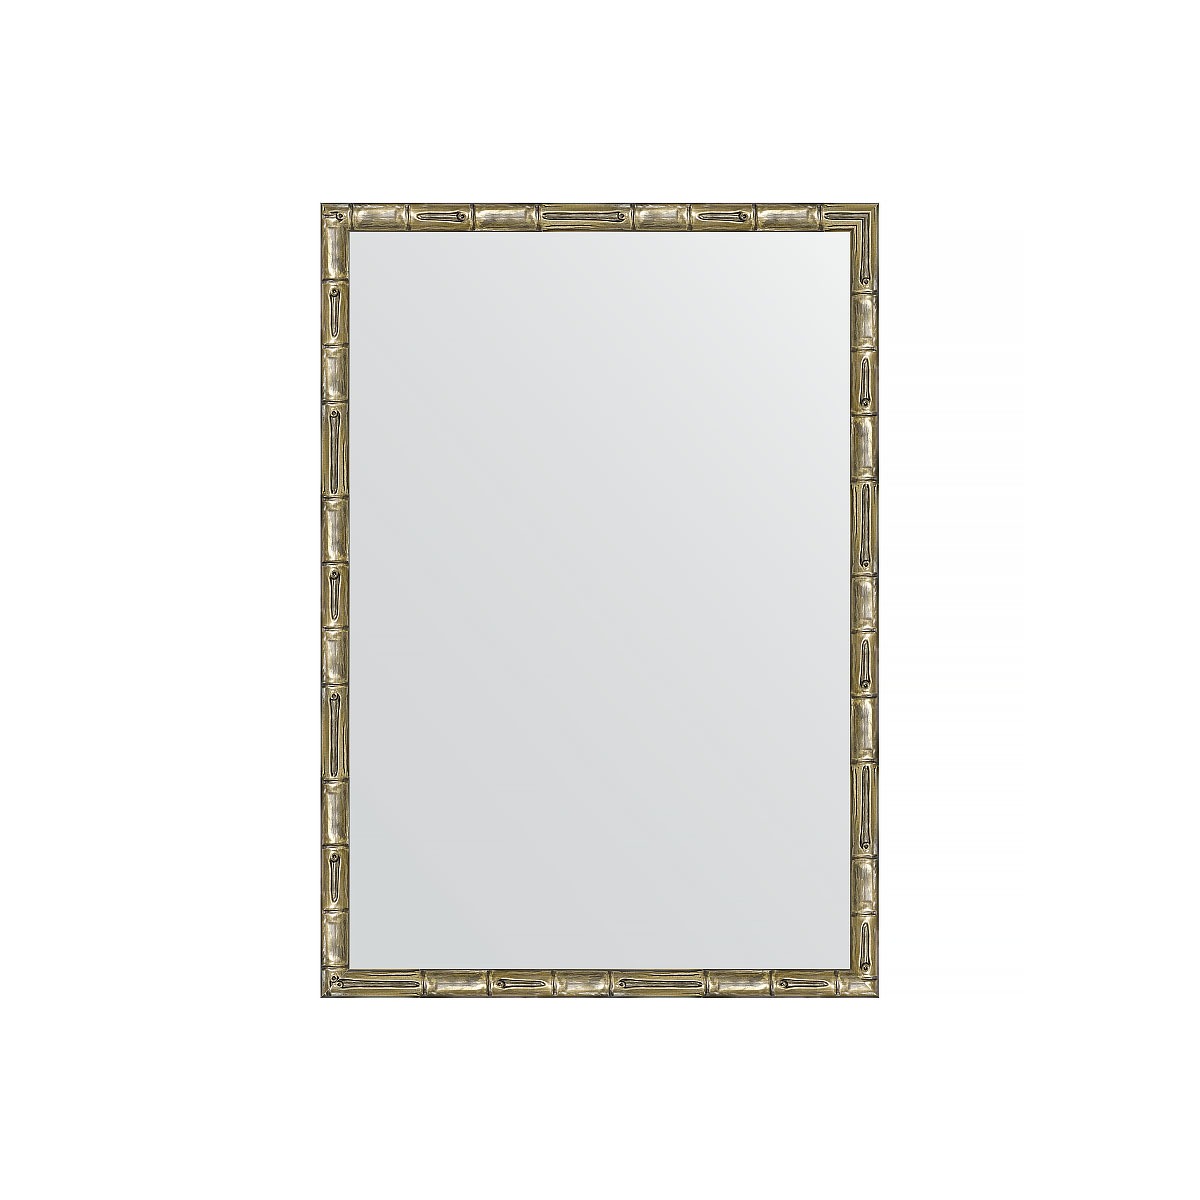 Зеркало в багетной раме Evoform серебряный бамбук 24 мм 47х67 см зеркало с фацетом в багетной раме evoform серебряный бамбук 73 мм 58х143 см